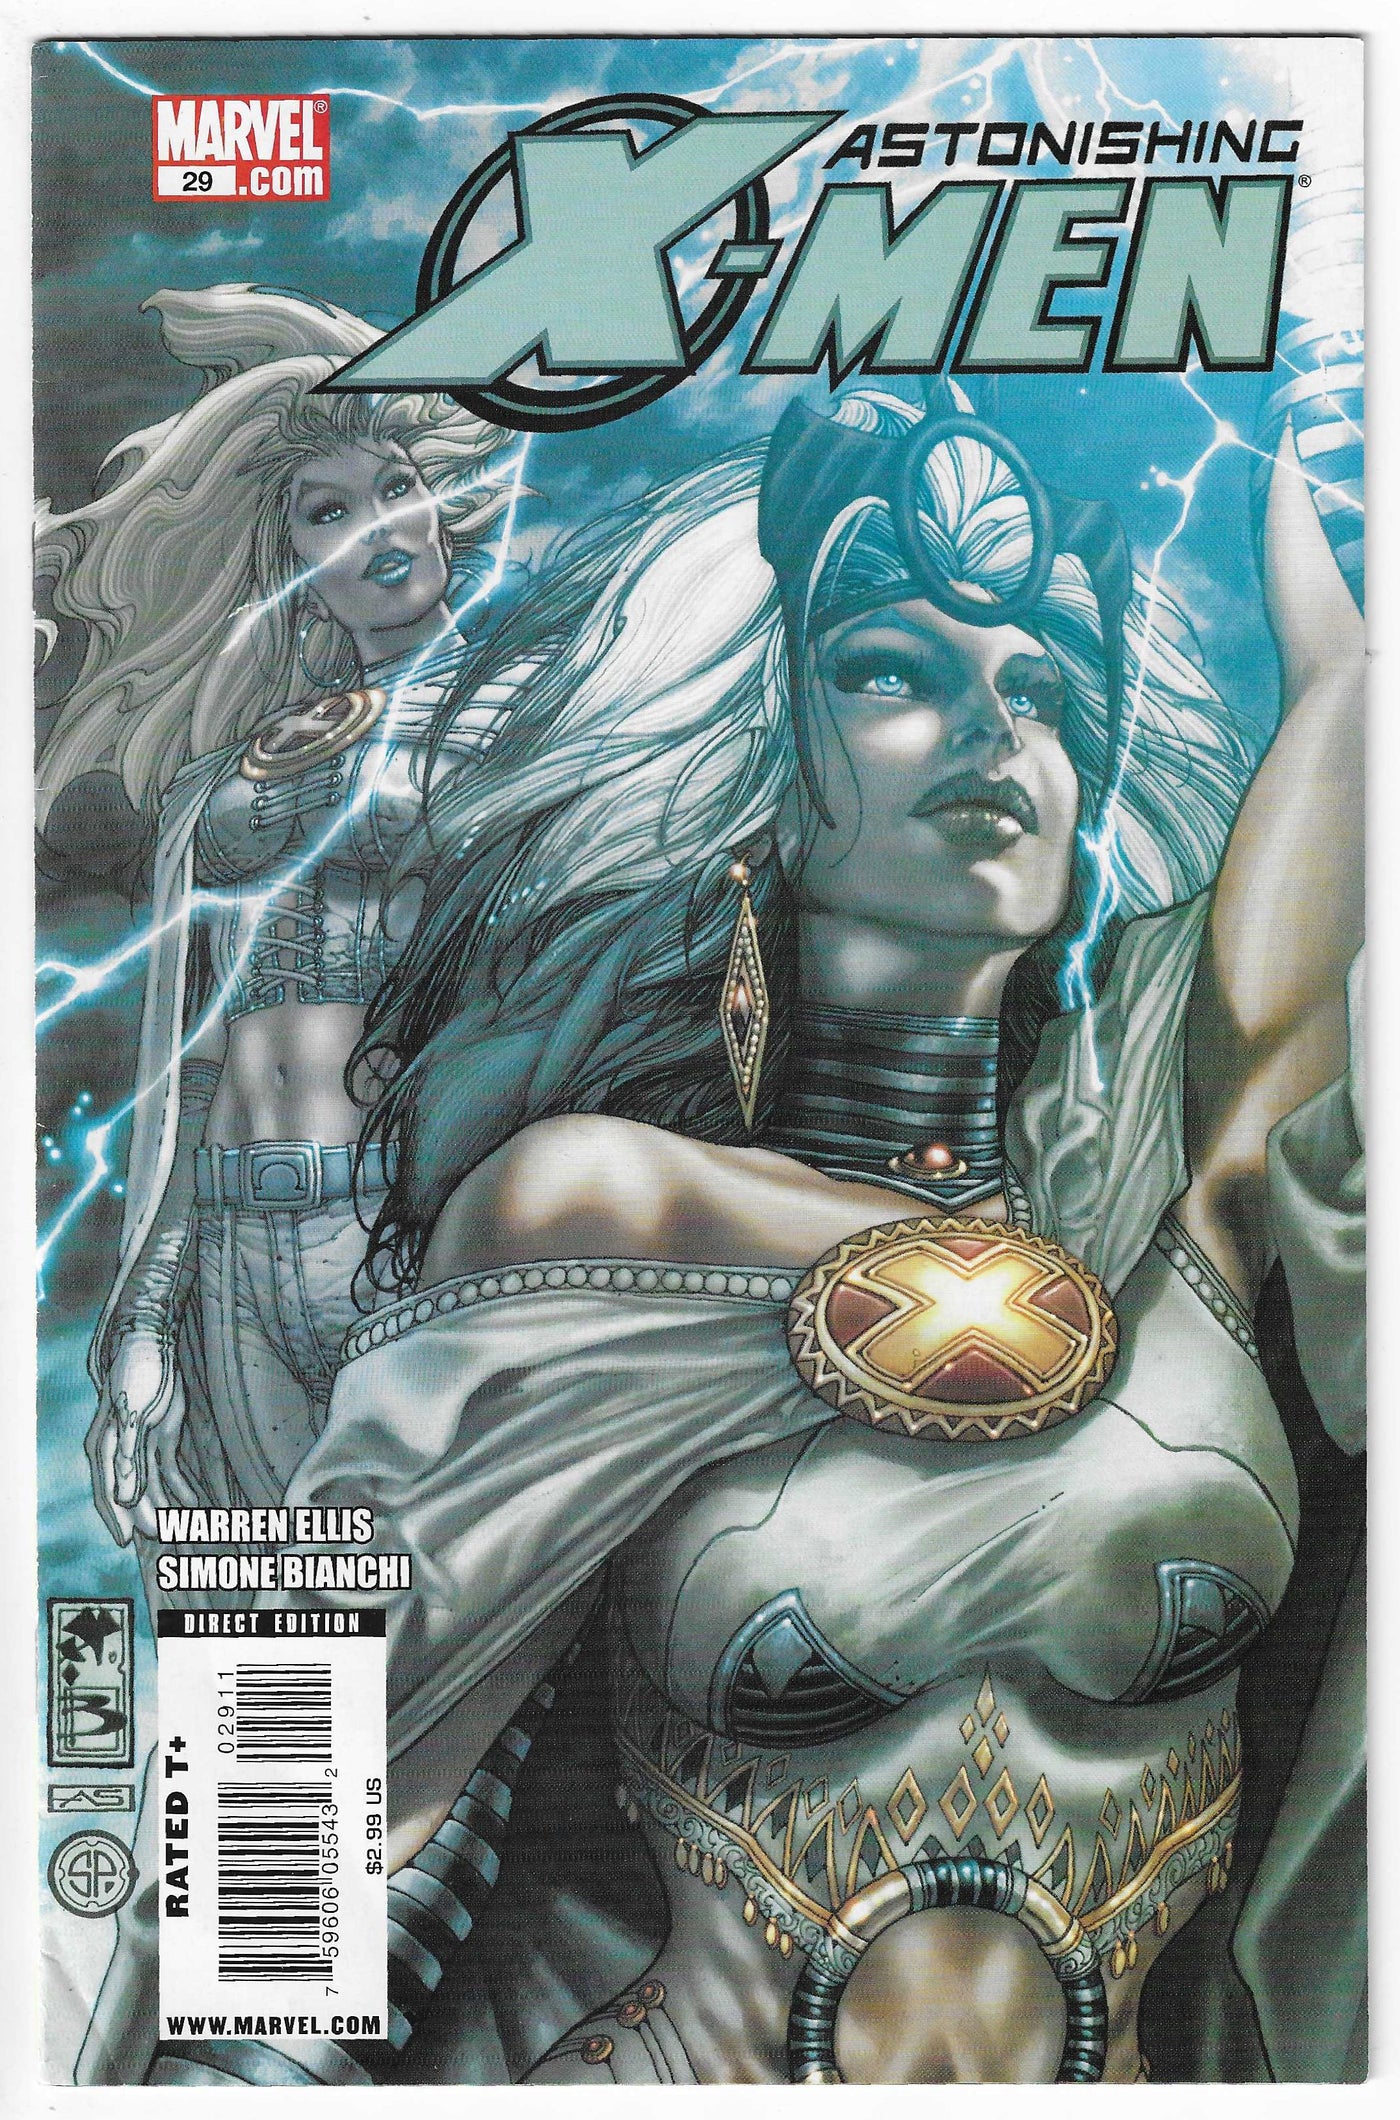 Astonishing X-Men (Volume 3) #29